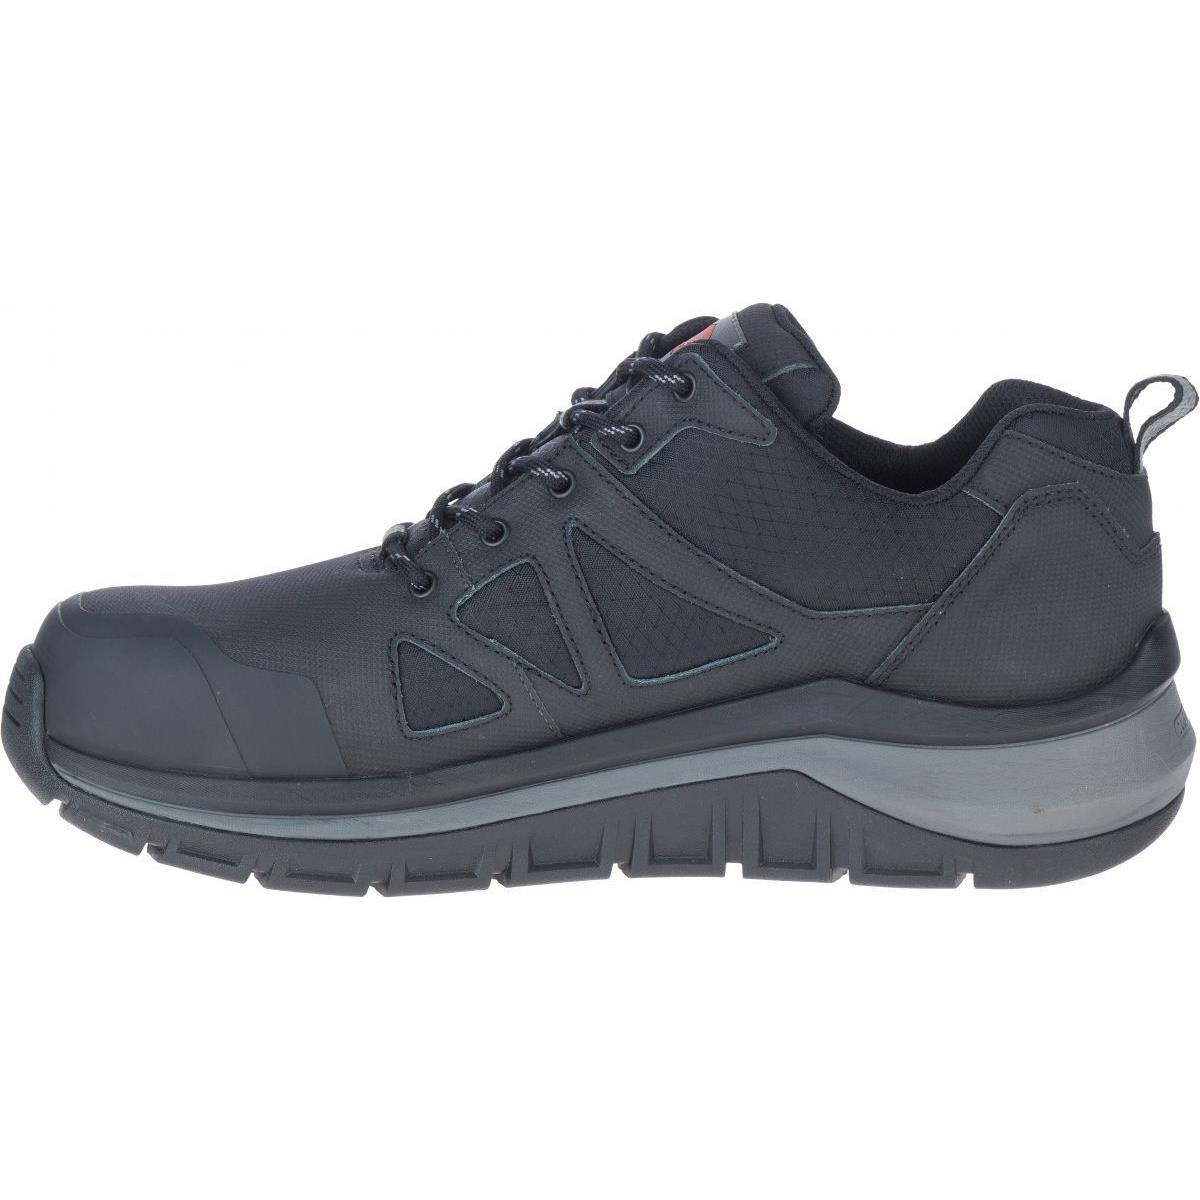 Merrell Work Men`s Fullbench Speed Carbon Fiber Toe Work Shoe Black - J003325 B